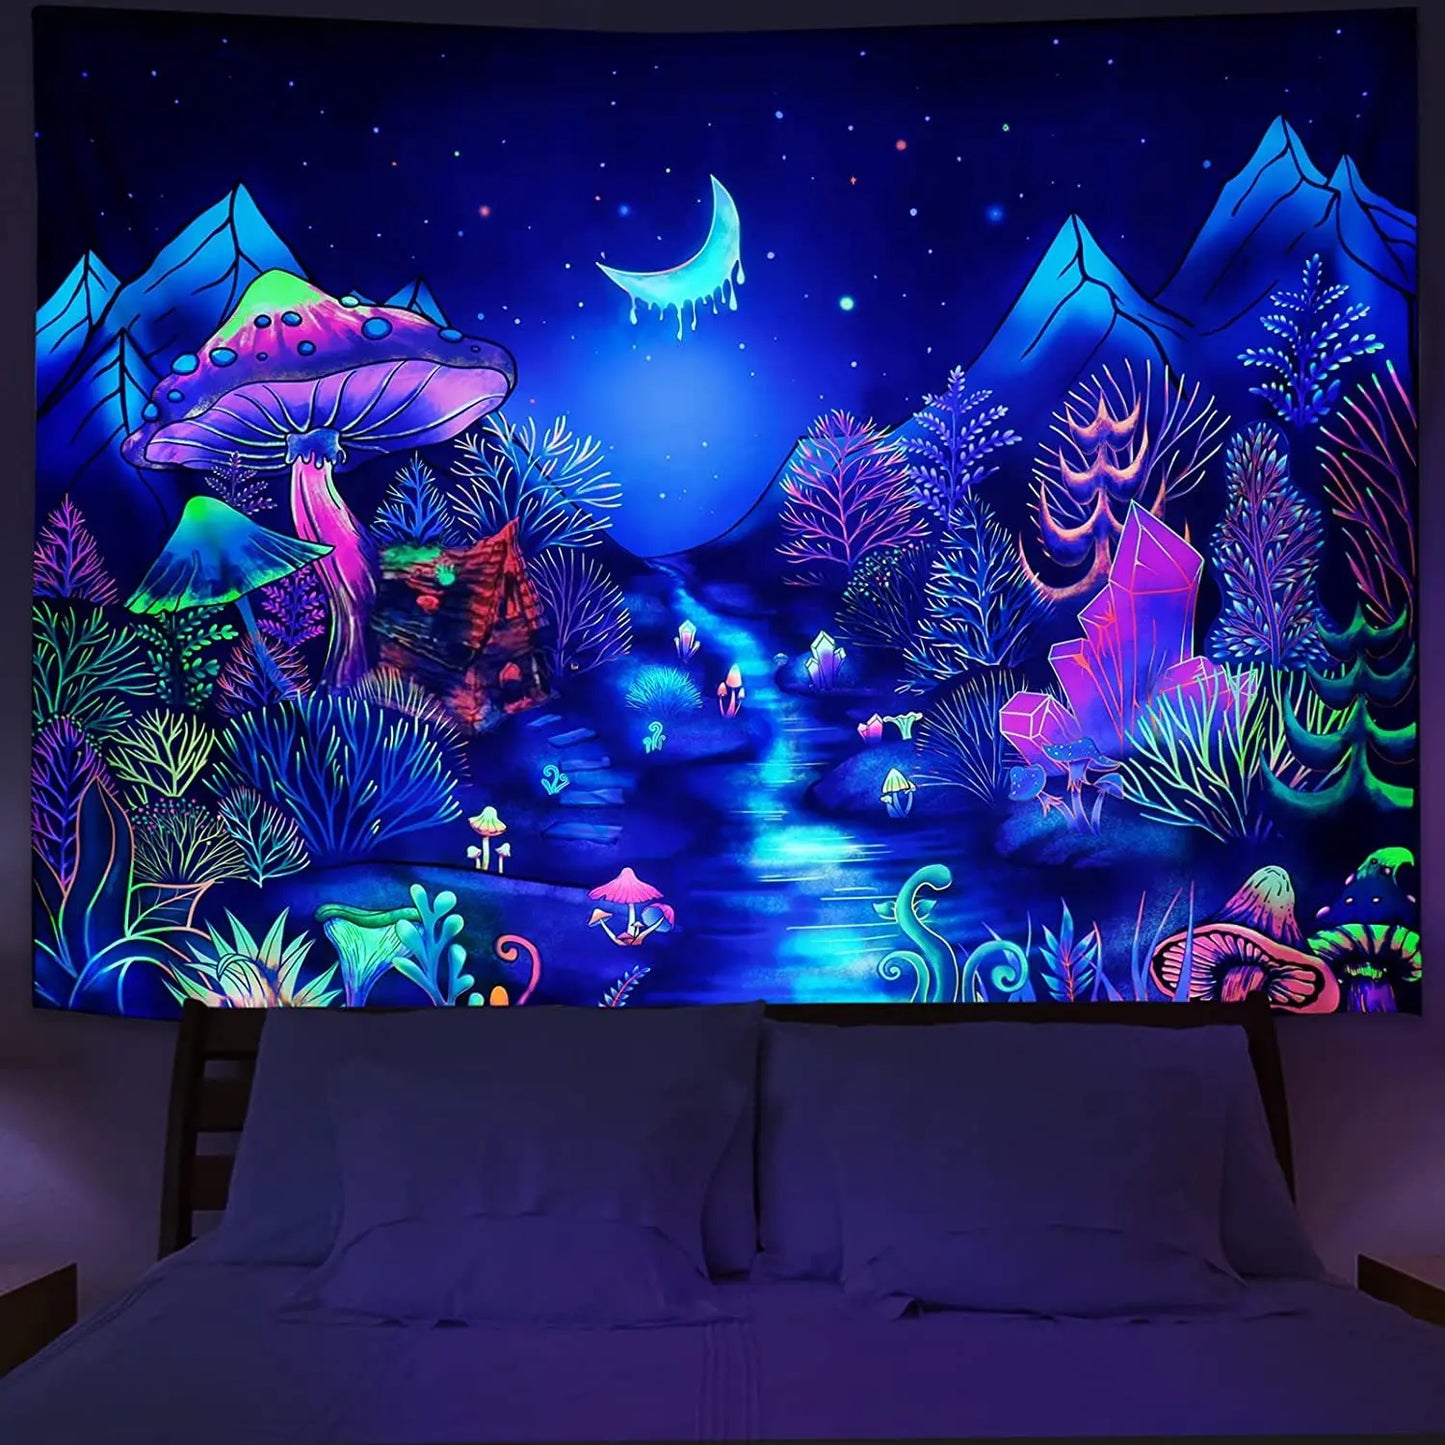 Tapisserie murale fluorescente d'astronaute UV, tapisserie Hippie suspendue pour chambre à coucher, décoration de pièce indépendante